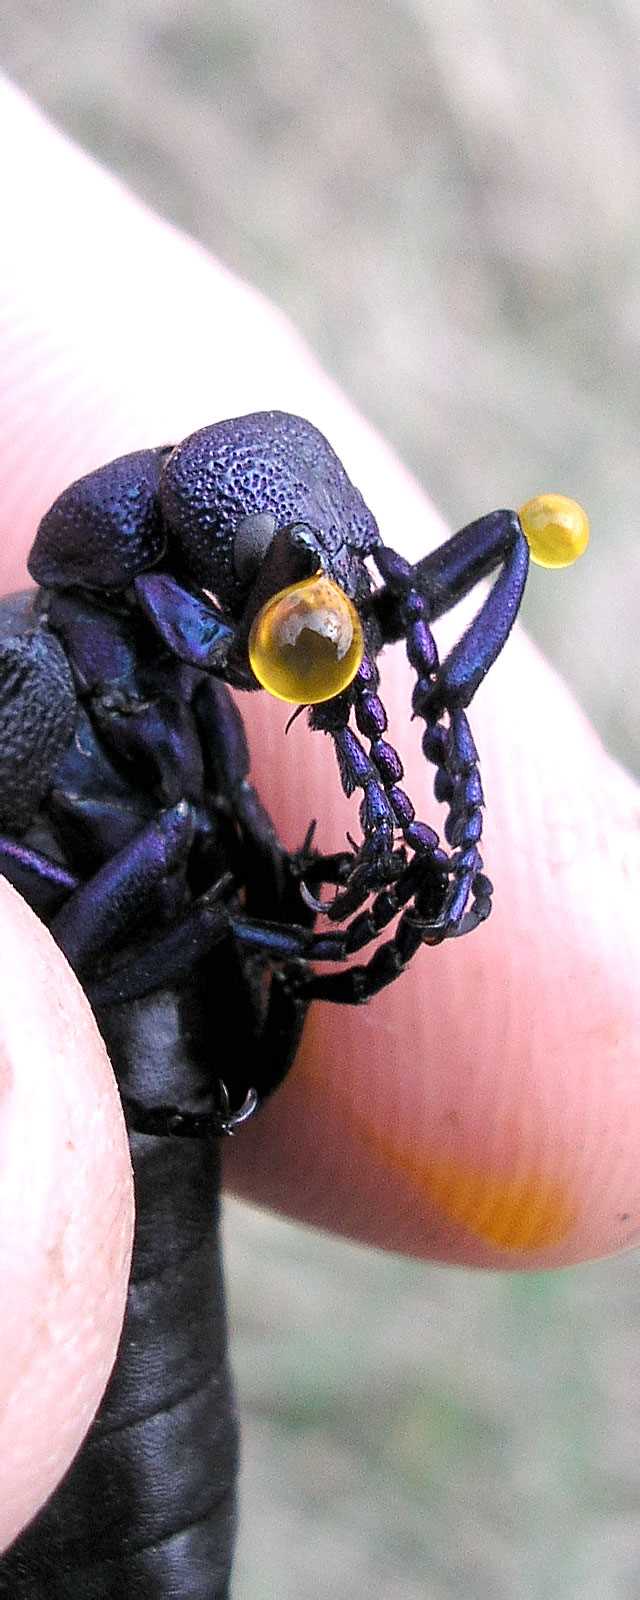 Механизмы, которые жуки используют для выделения яда